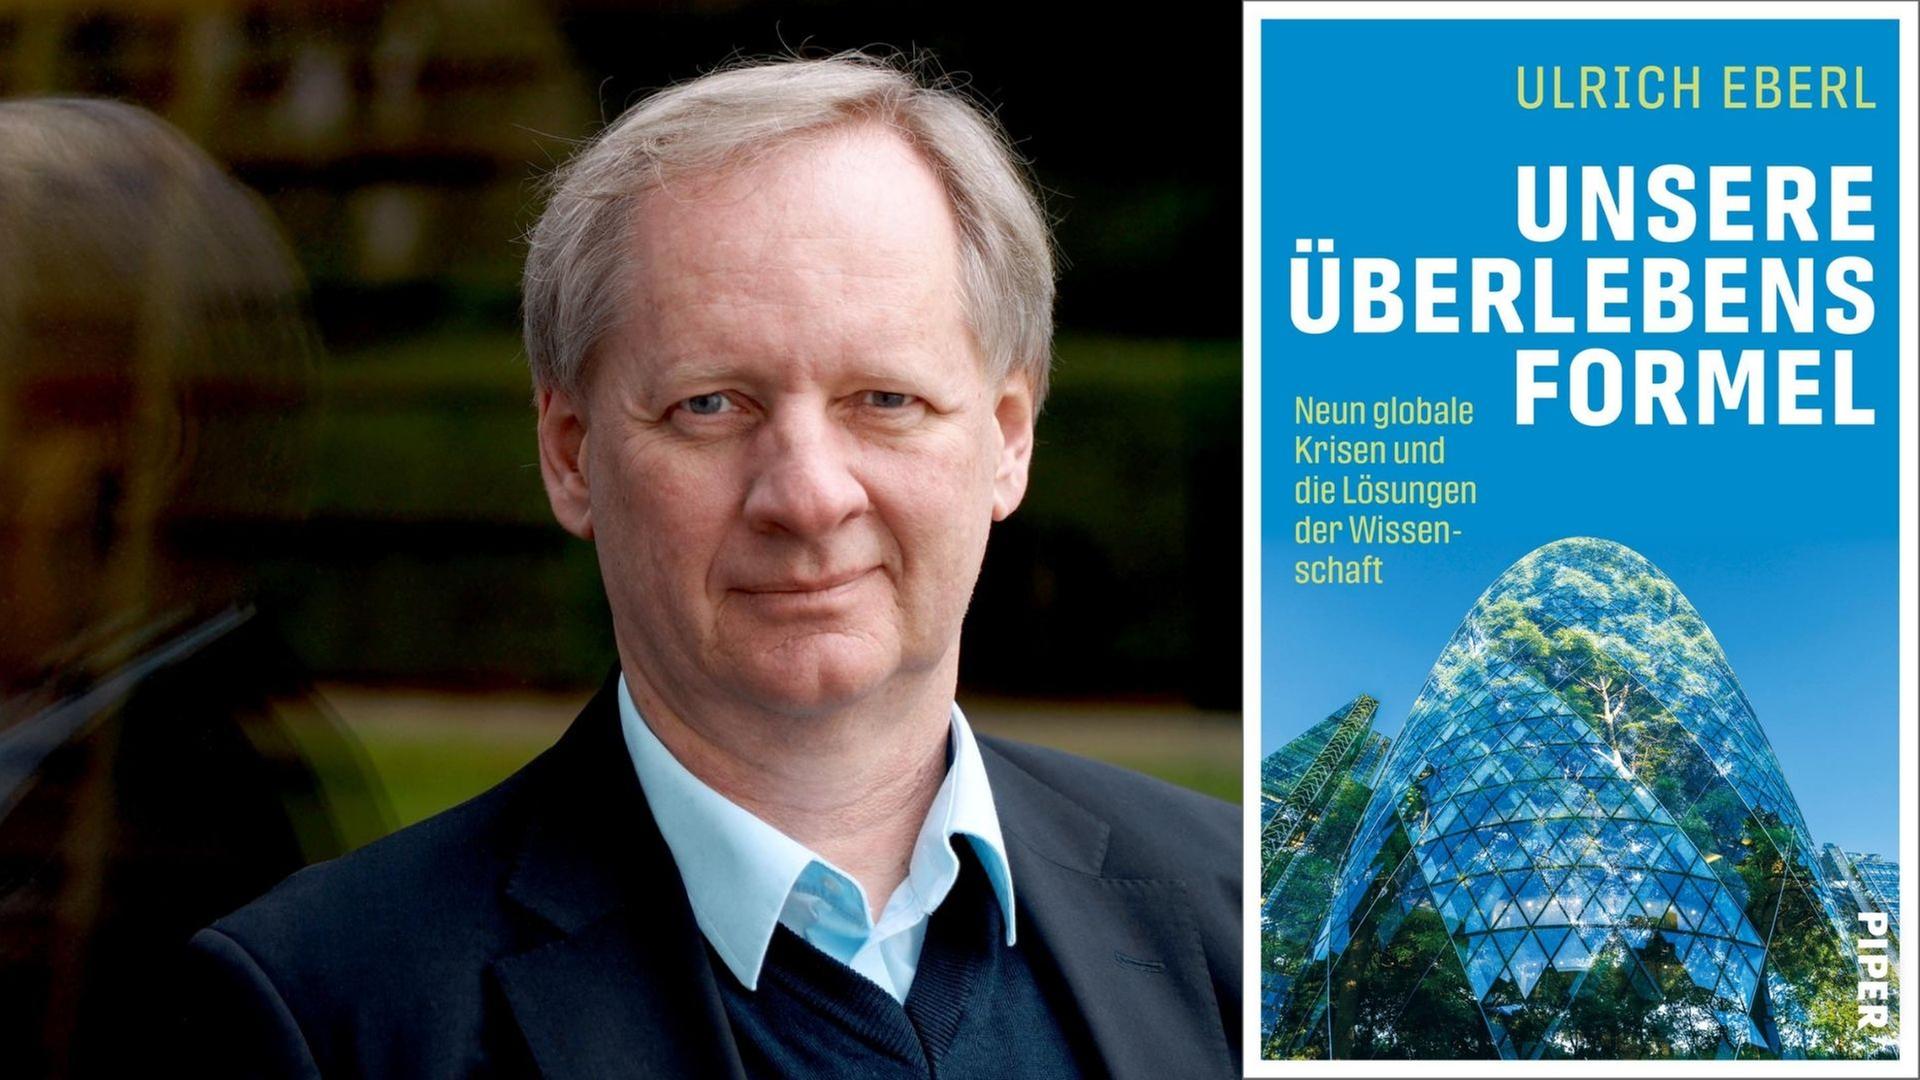 Ulrich Eberl und sein Sachbuch "Unsere Überlebensformel. Neun globale Krisen und die Lösungen der Wissenschaft"